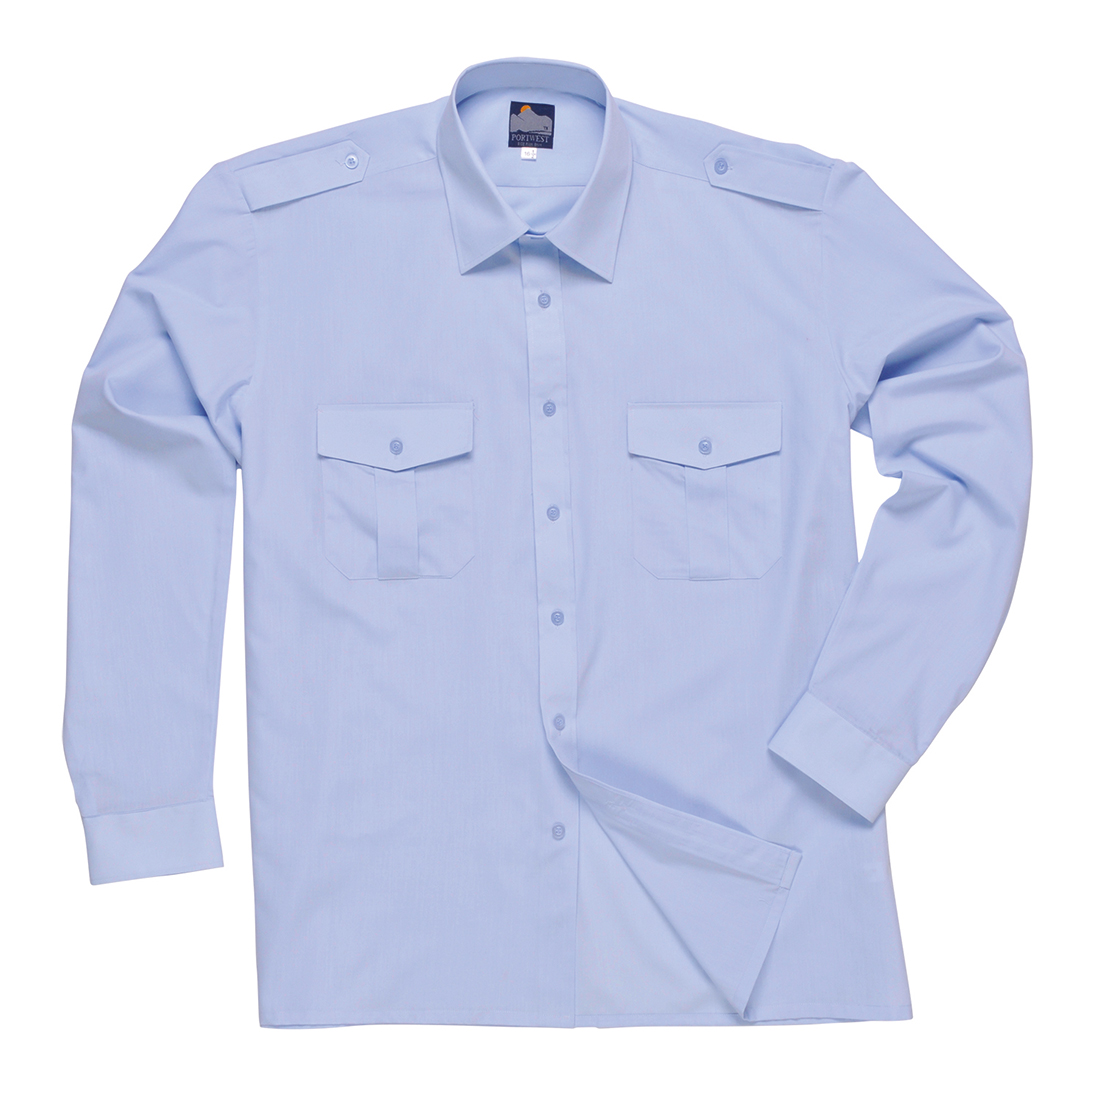 Pilot Shirt, Long Sleeves - Blue